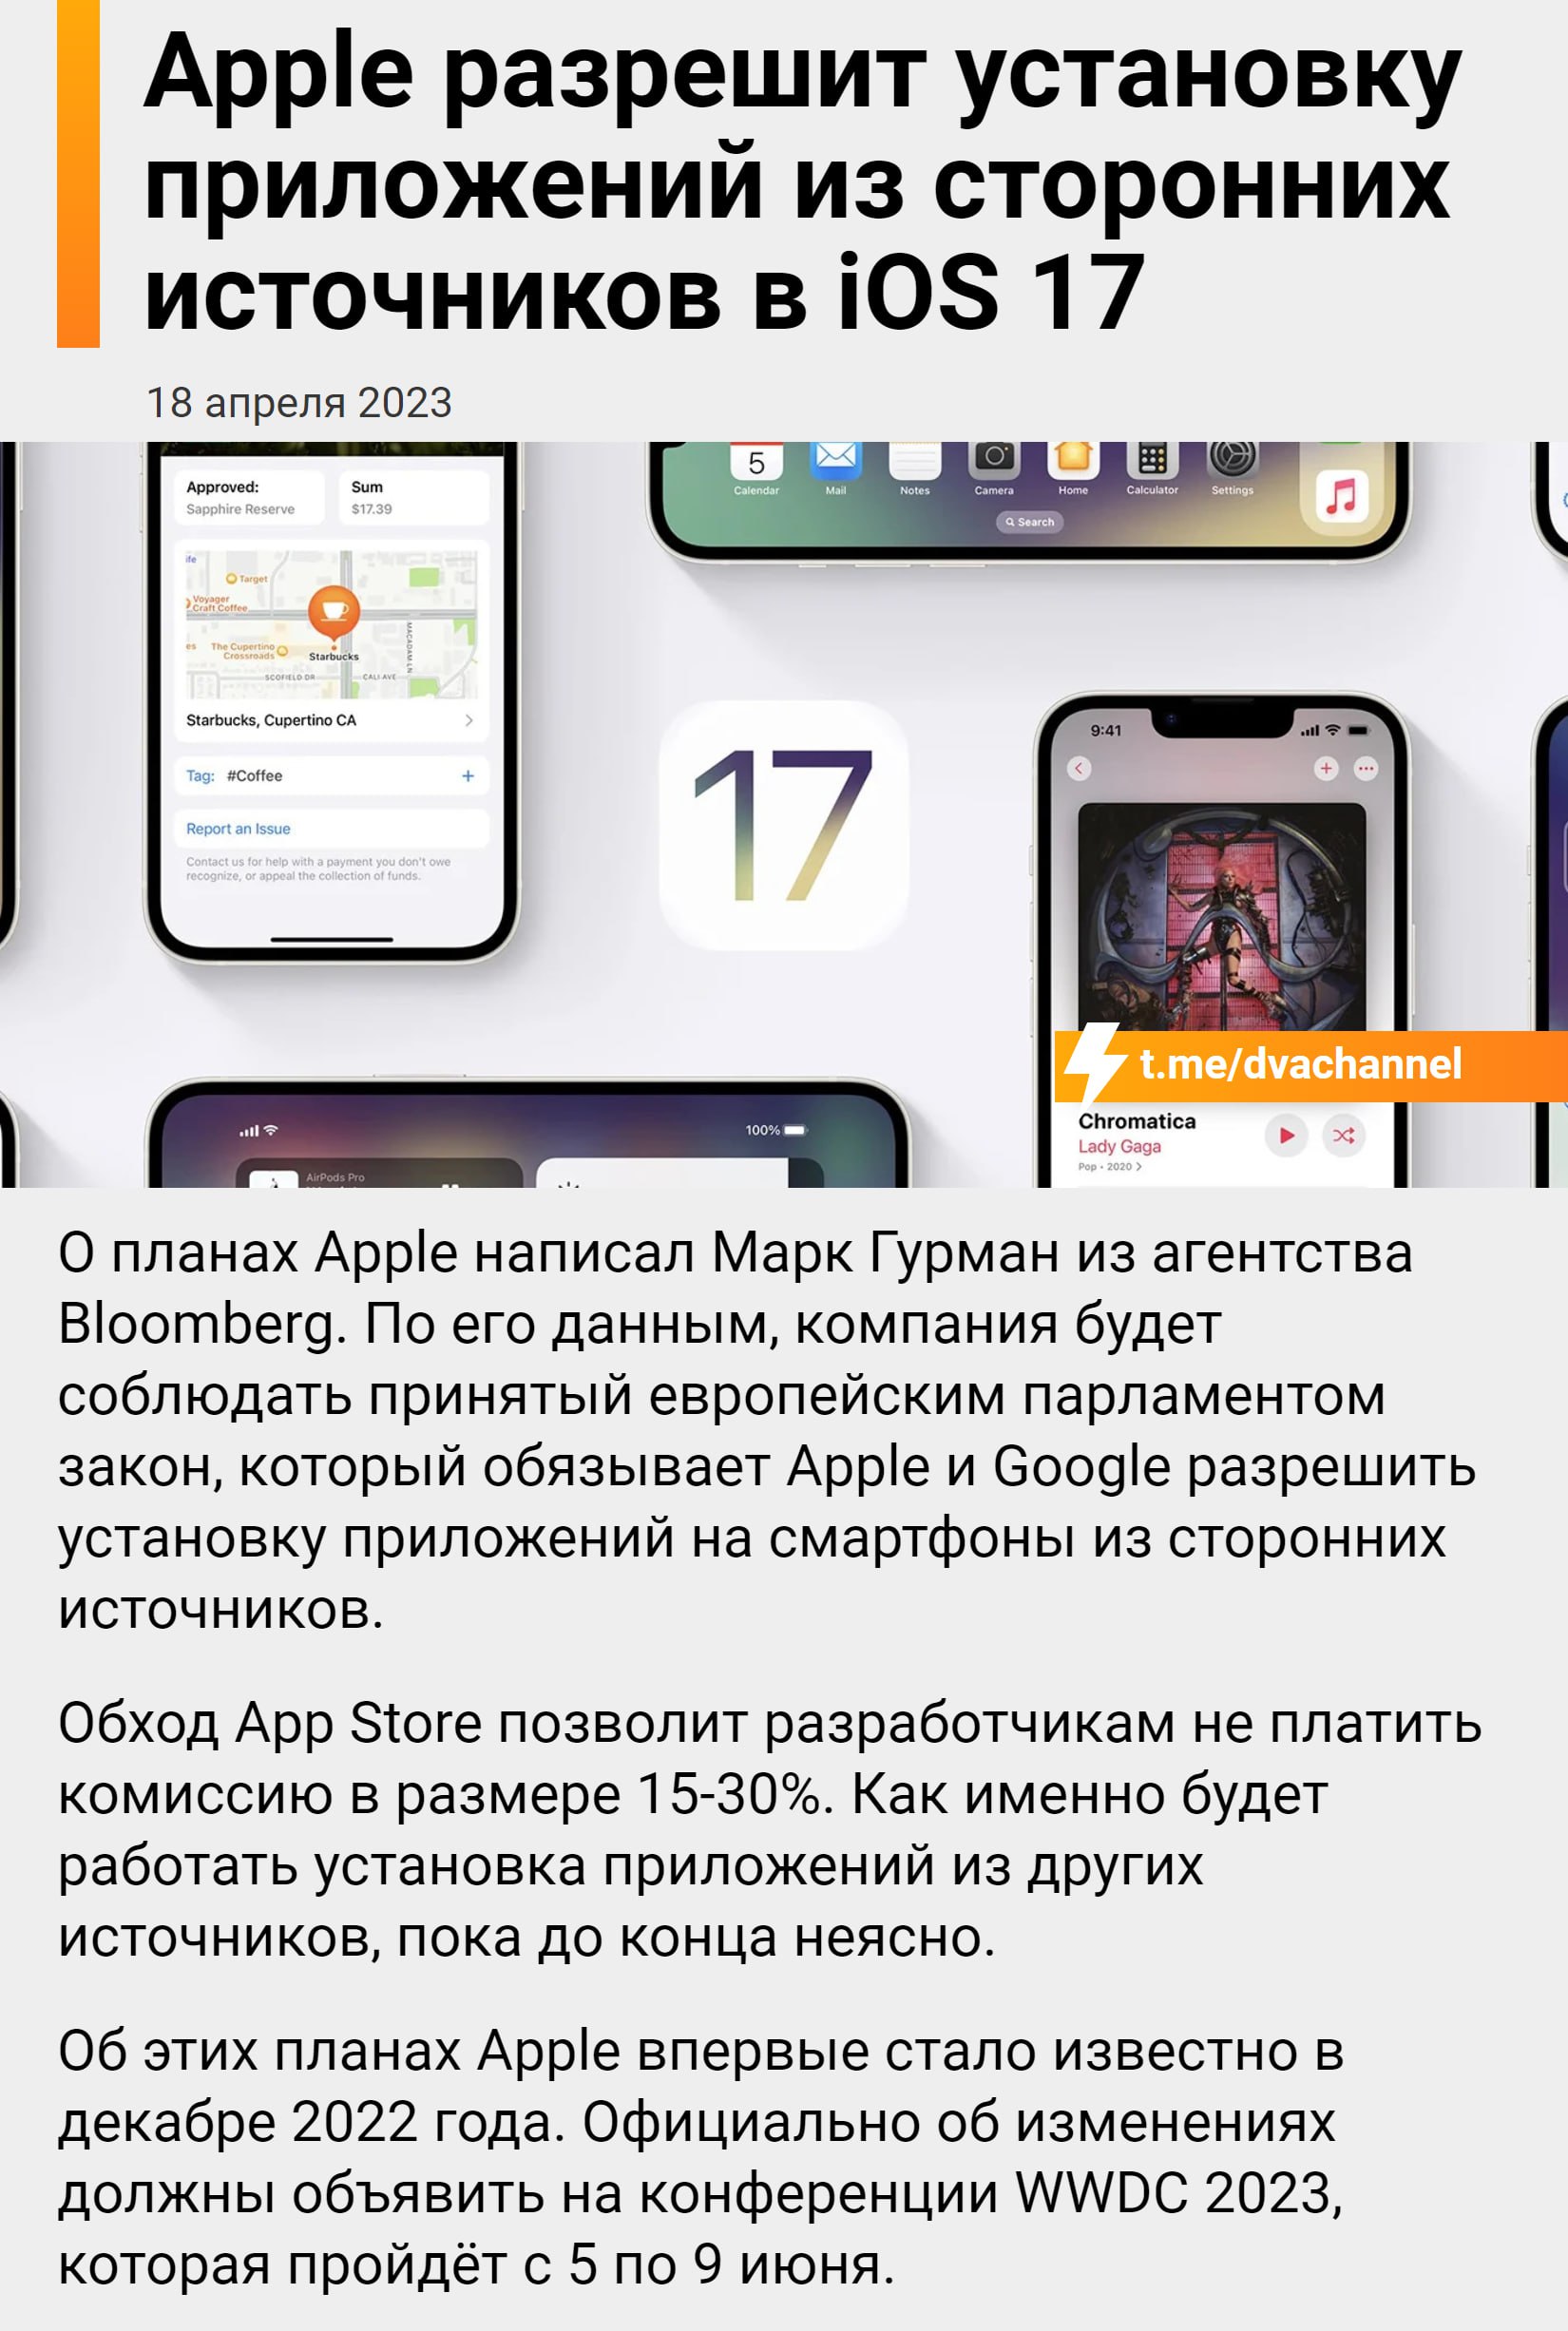 Приложение телеграмм установить на айфон бесплатно русском языке фото 41